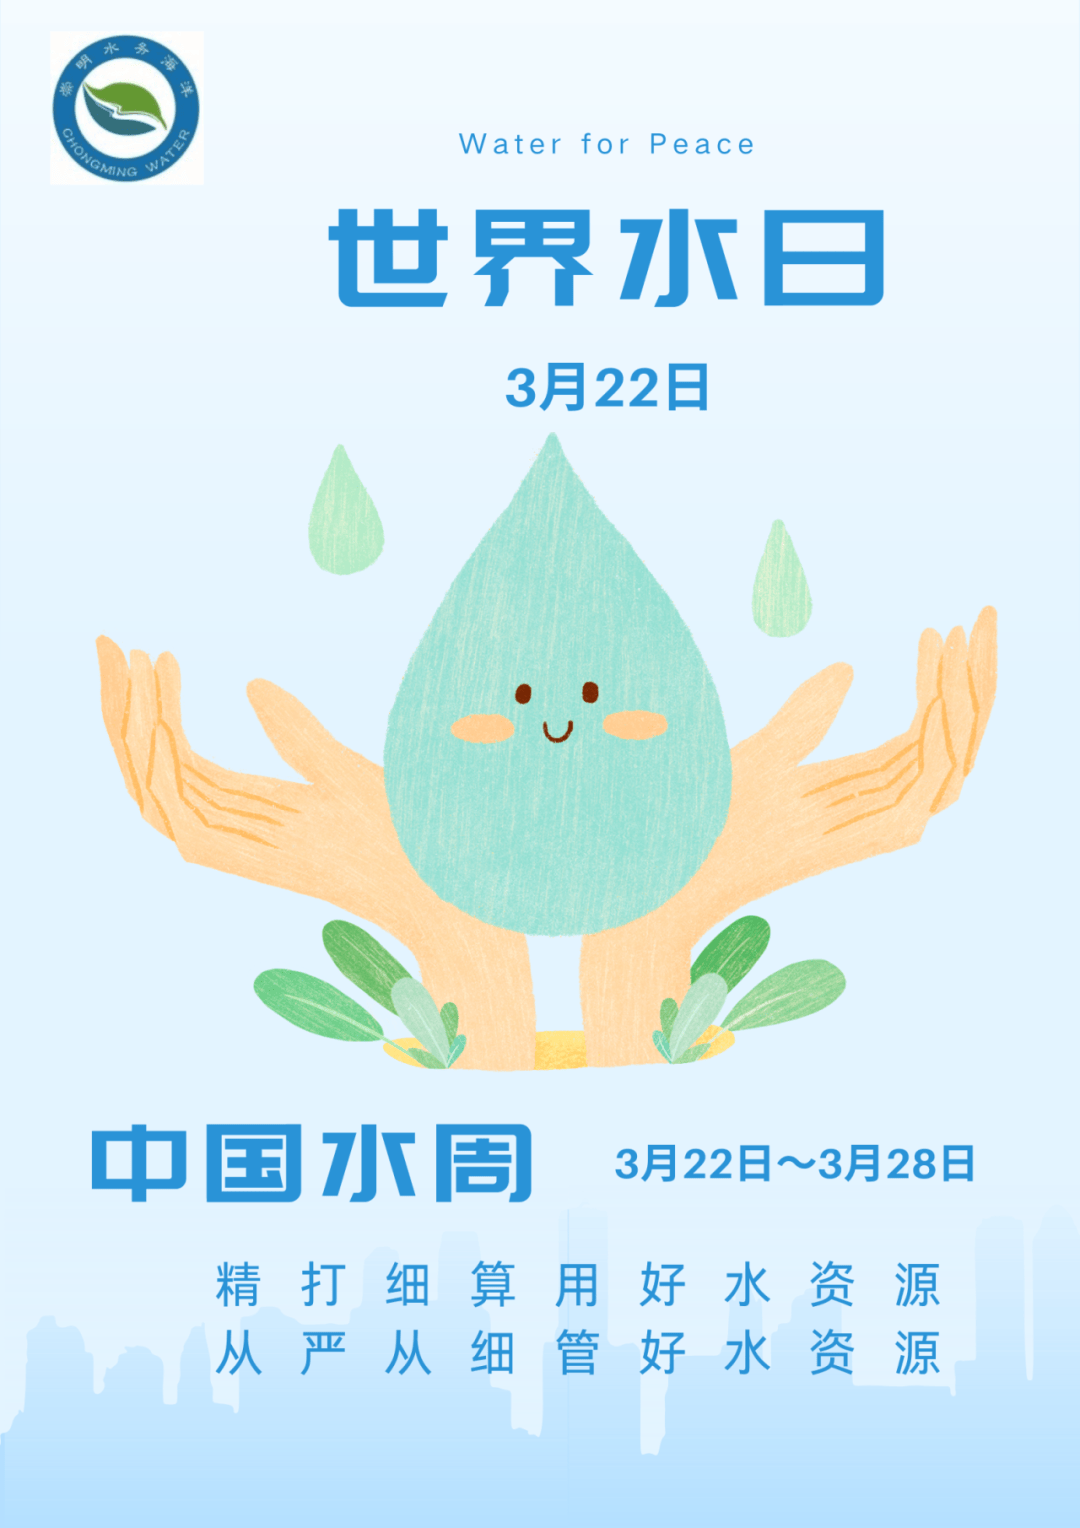 世界水日中国水周,崇明有这些活动!